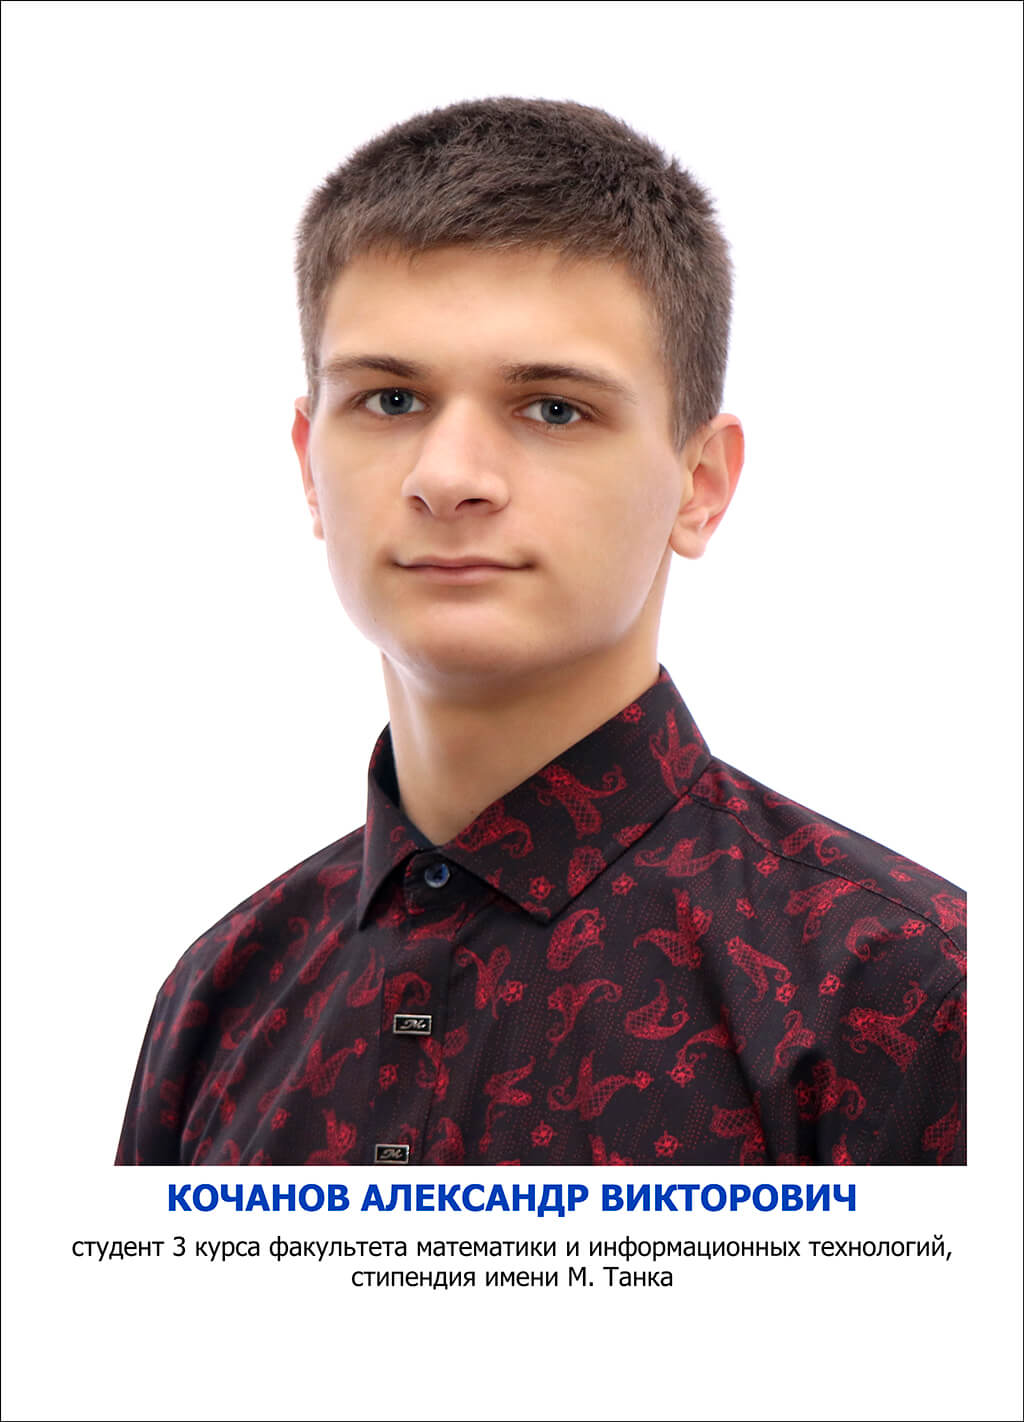 Кочанов Александр Викторович